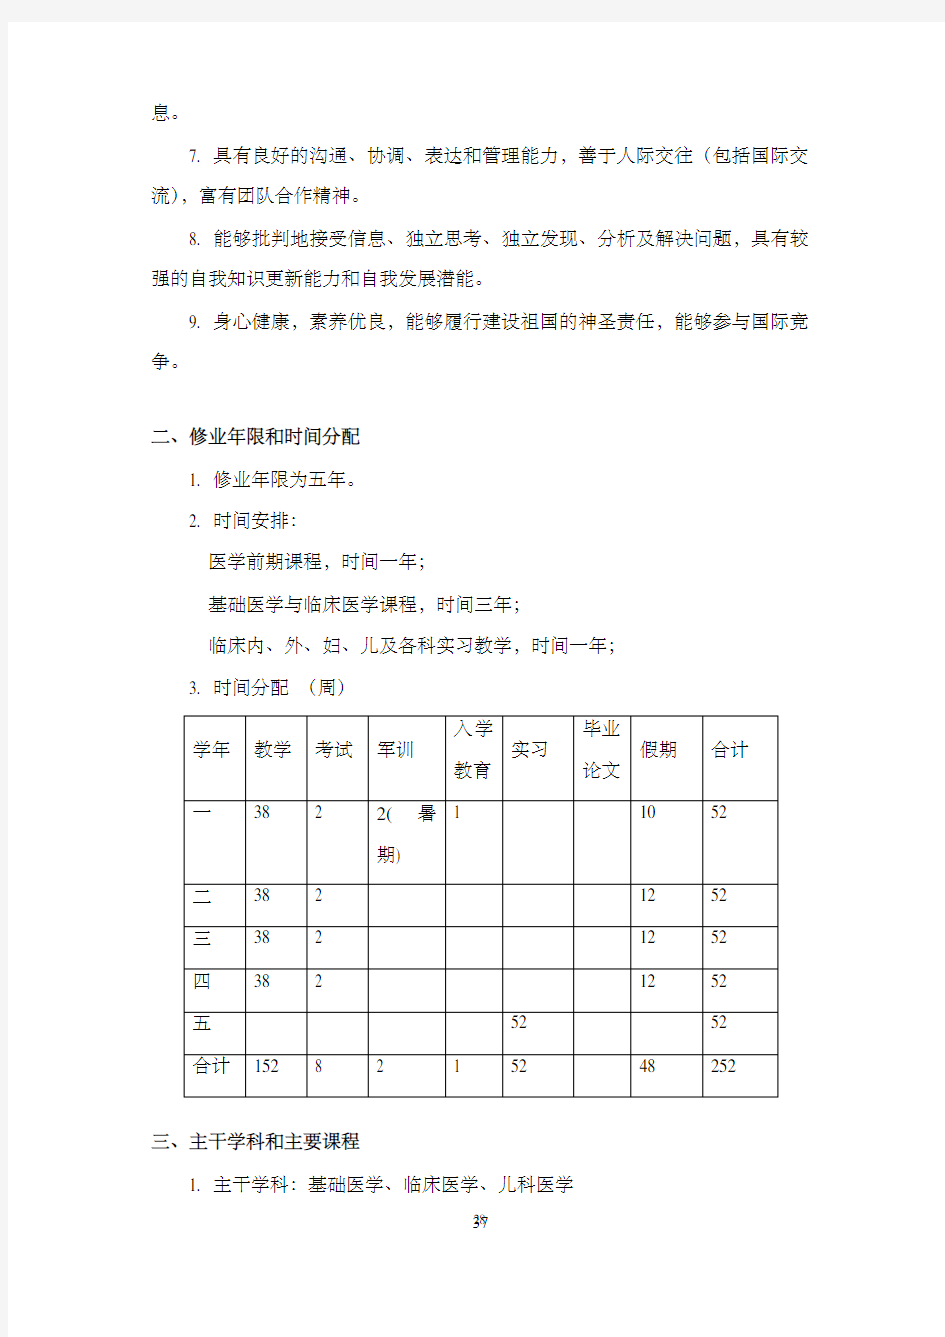 上海交通大学医学院临床医学儿科方向培养计划(2019)